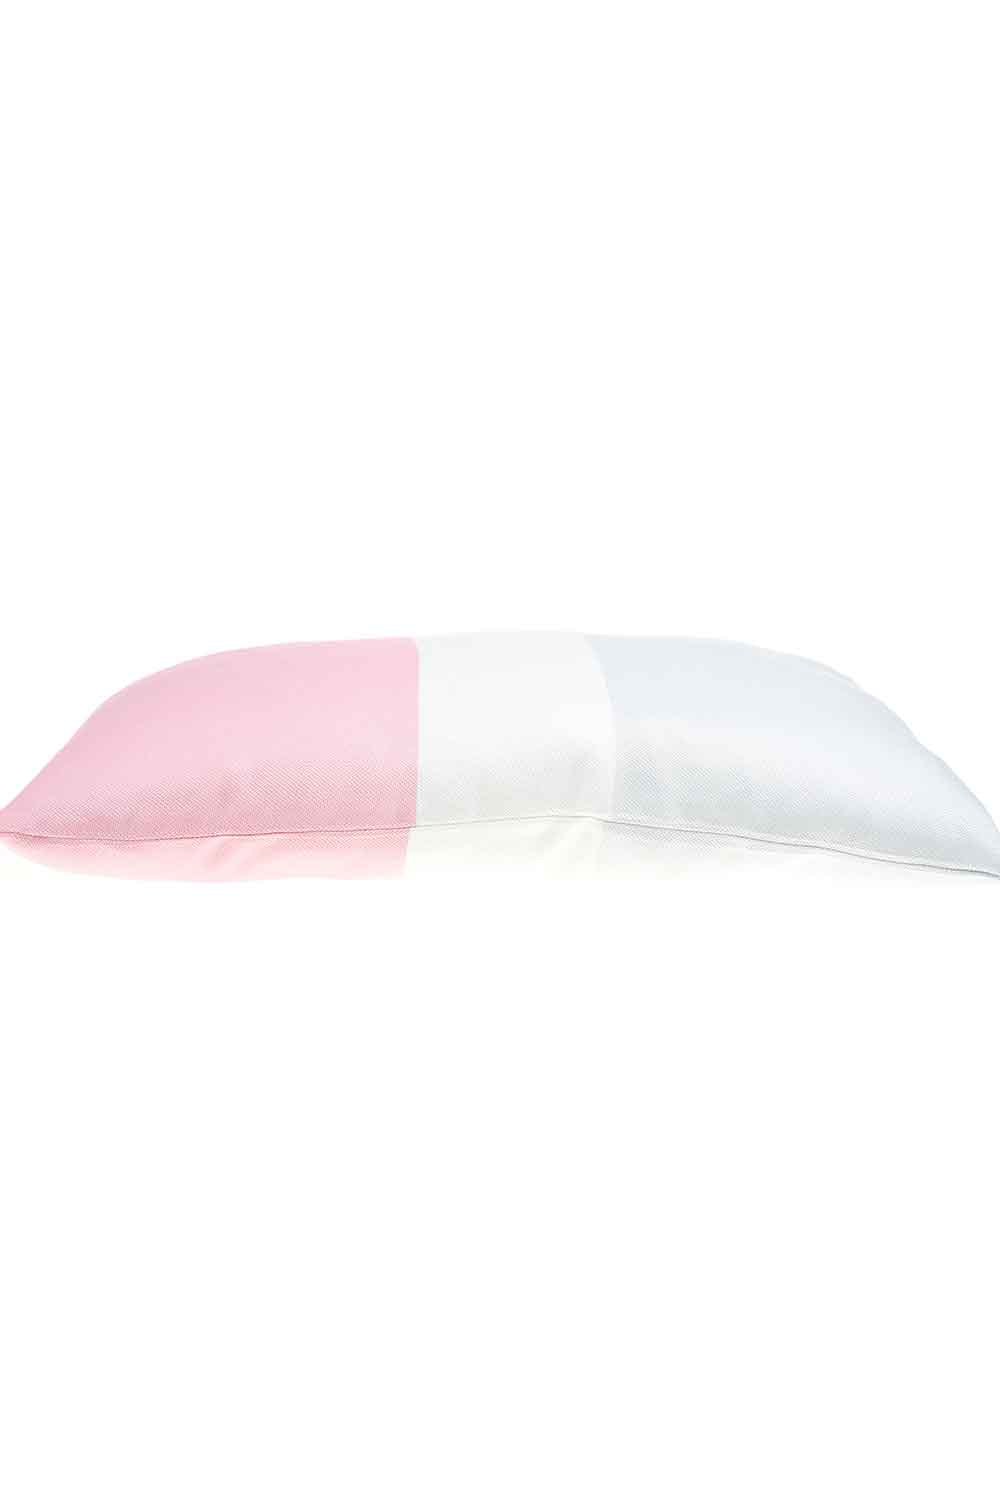 Pillow Case (Soft Colors)